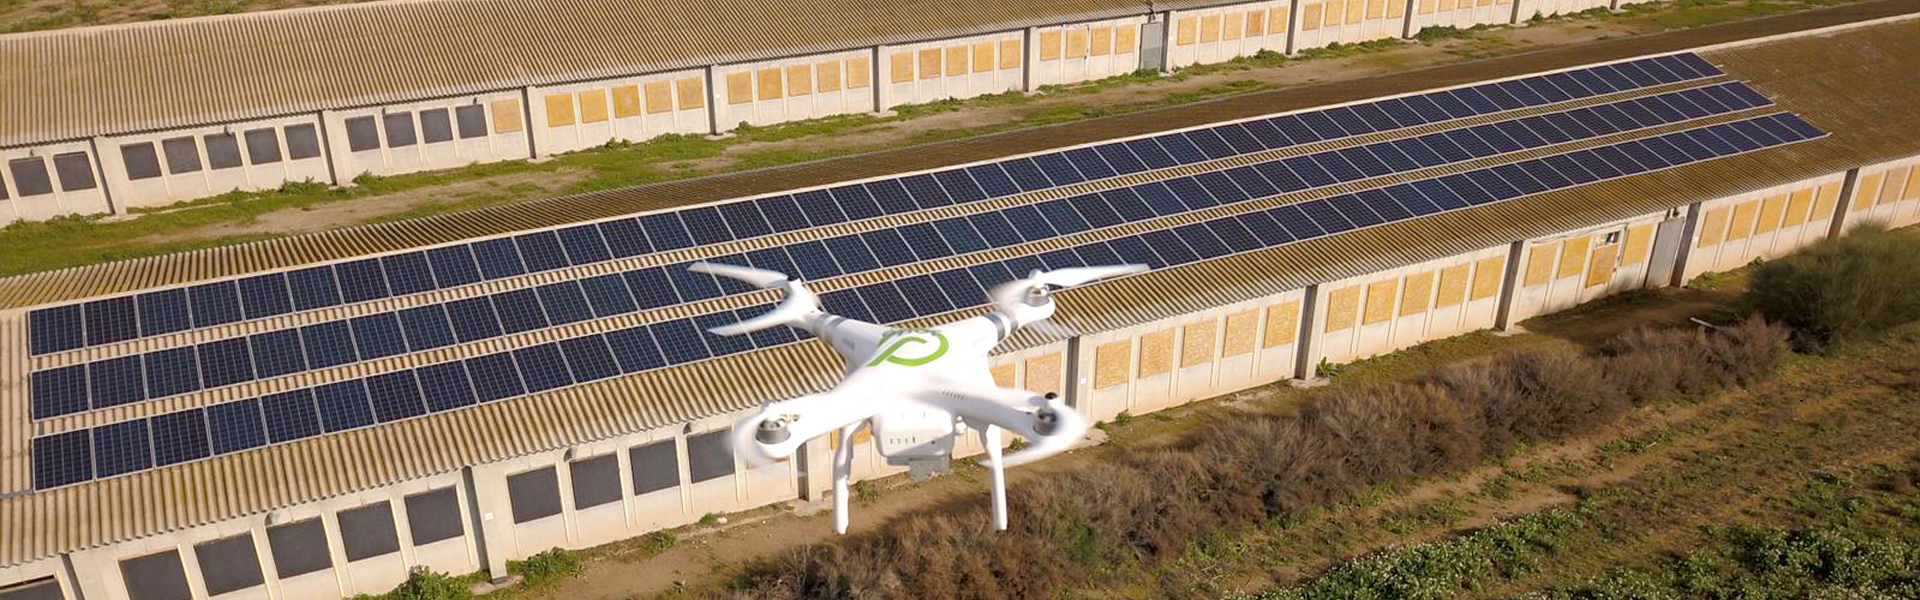 vista de la cubierta de la granja avícola con 150 modulos fotovoltaicos y del dron de Jorfe sobrevolando la instalación fotovoltaica